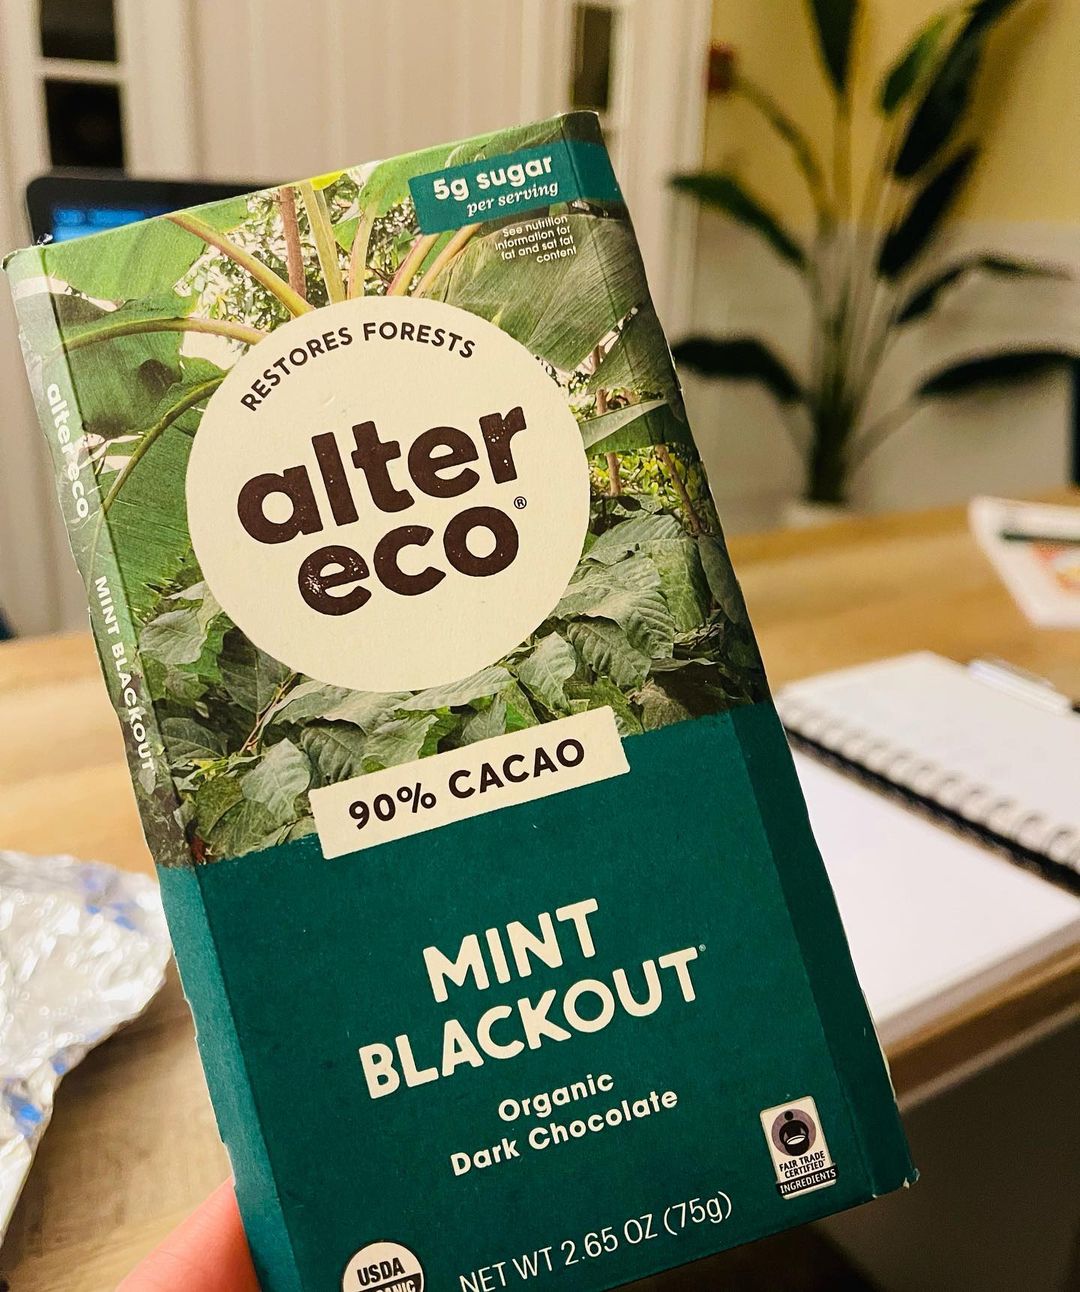 Alter Eco Chocolate